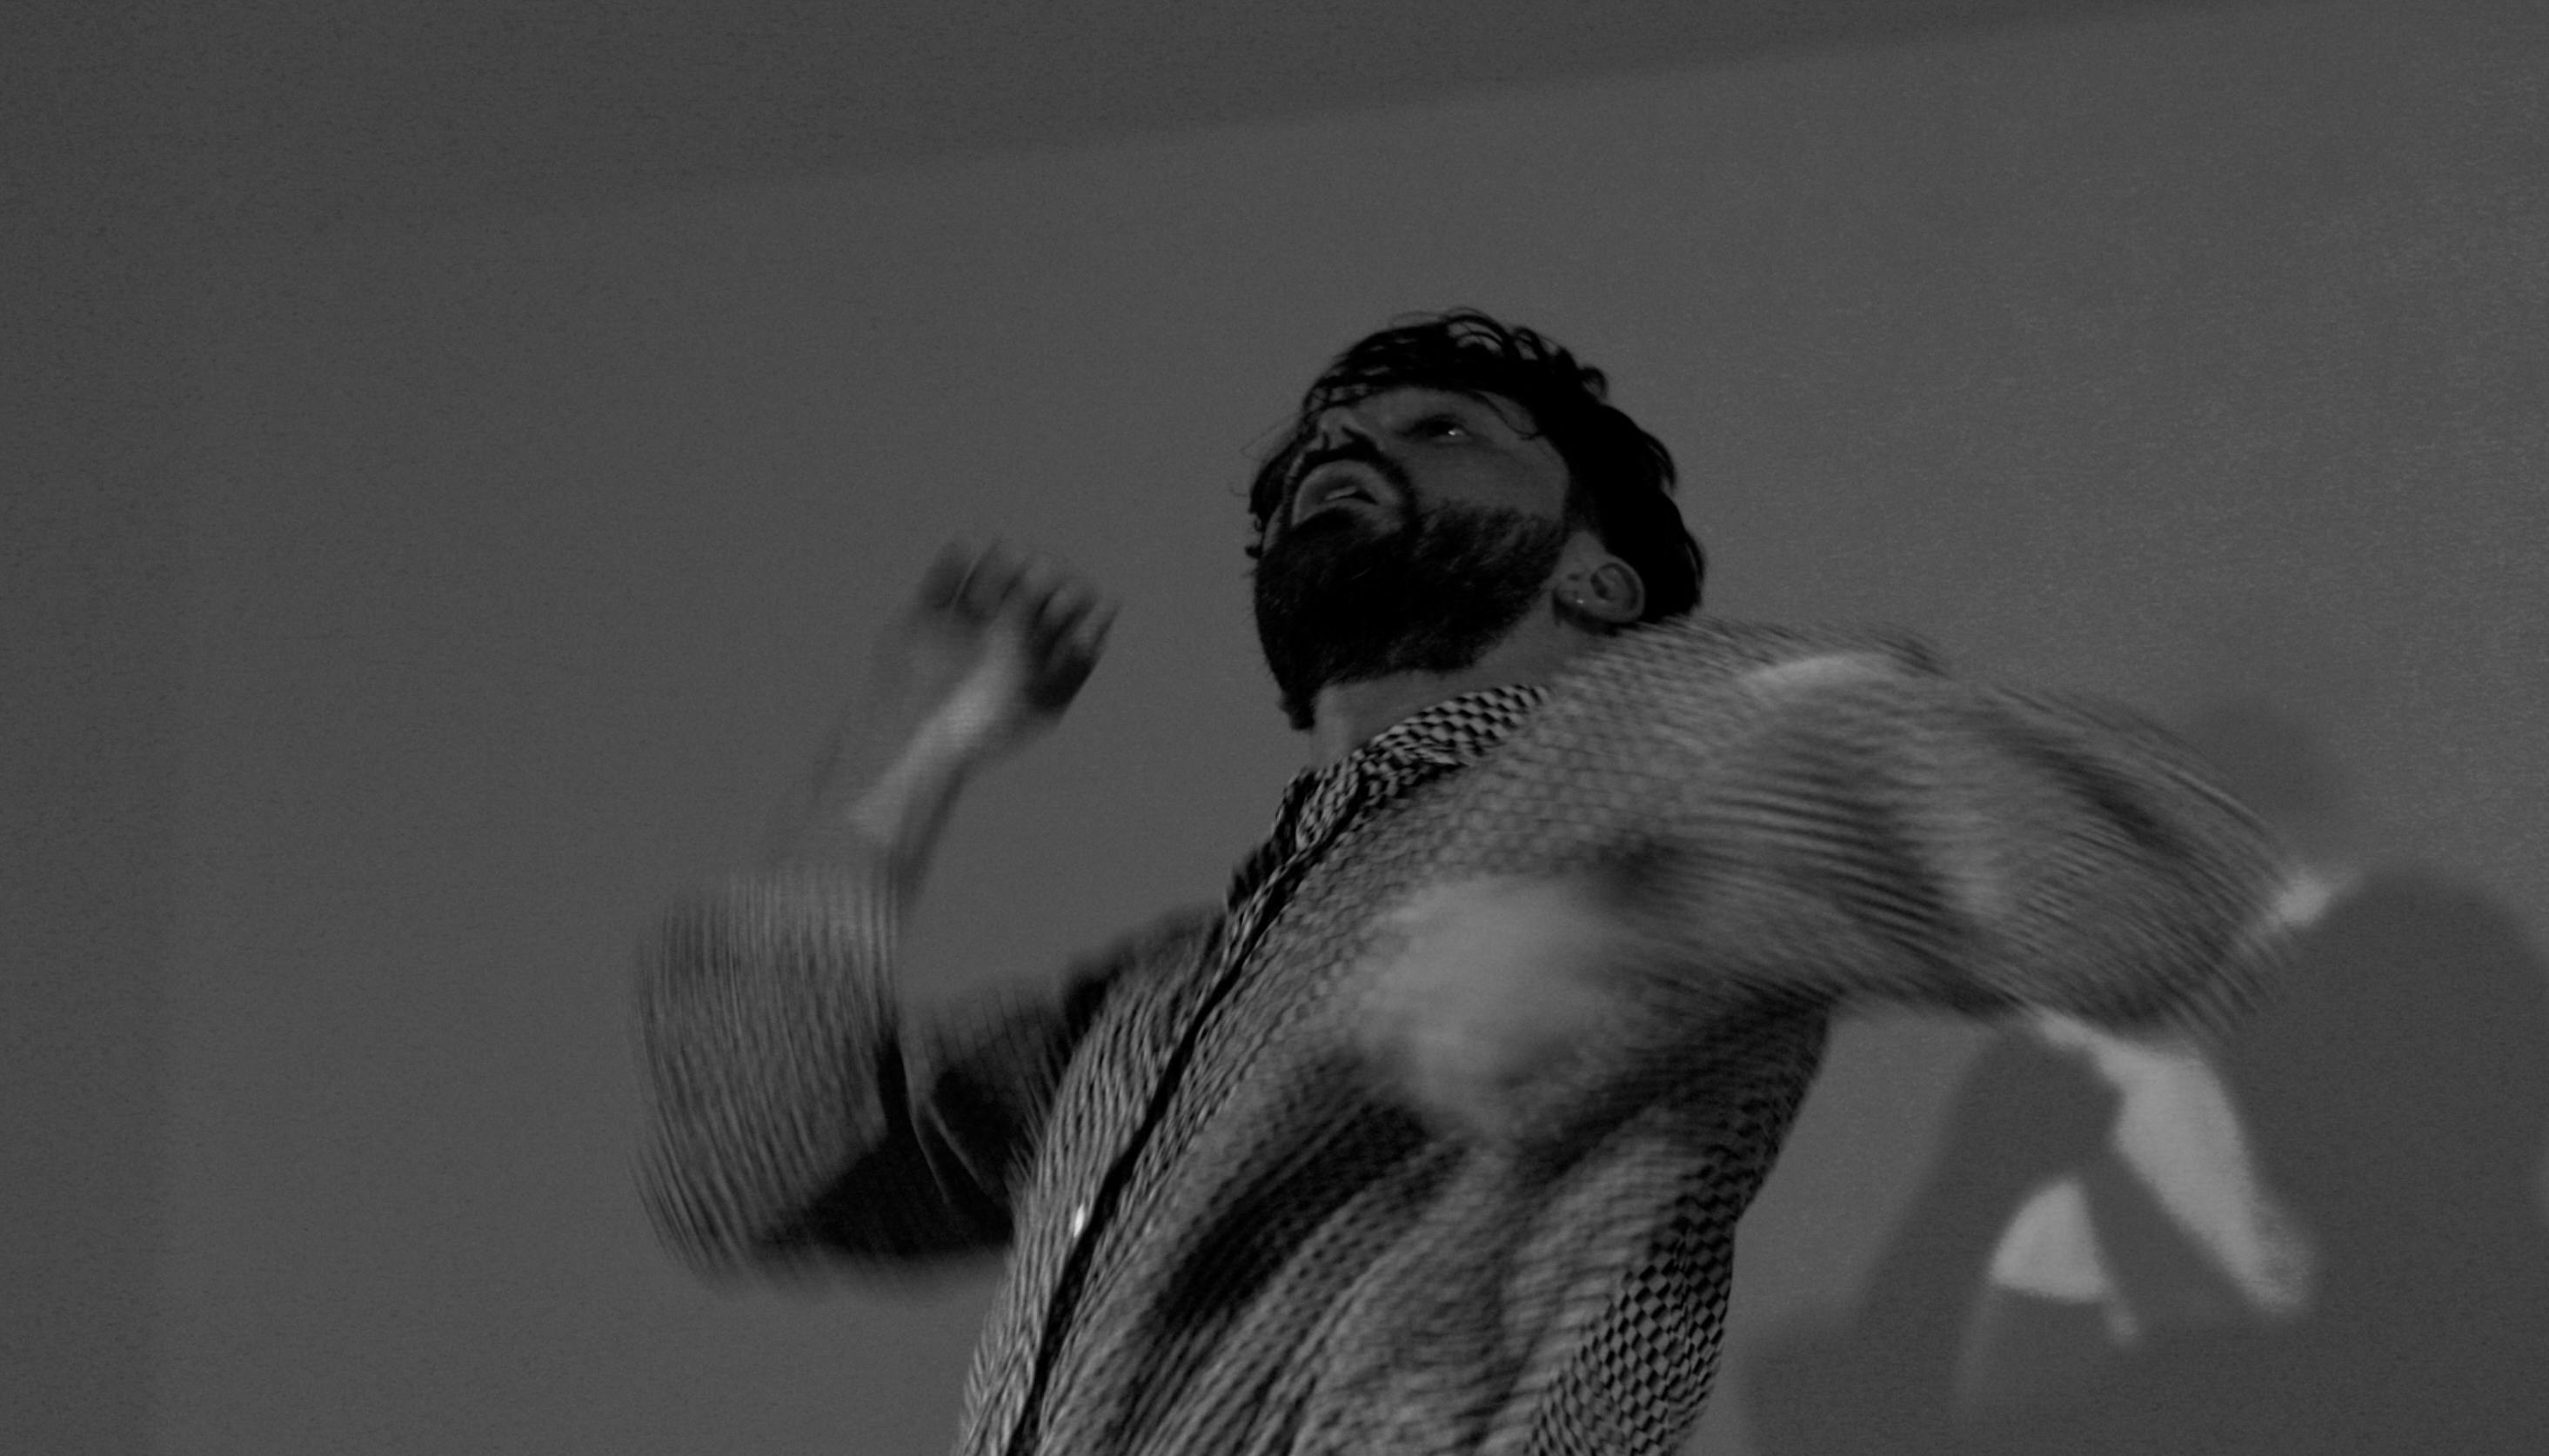 Simone Donati in una foto in bianco e nero sfuocata muove le braccia